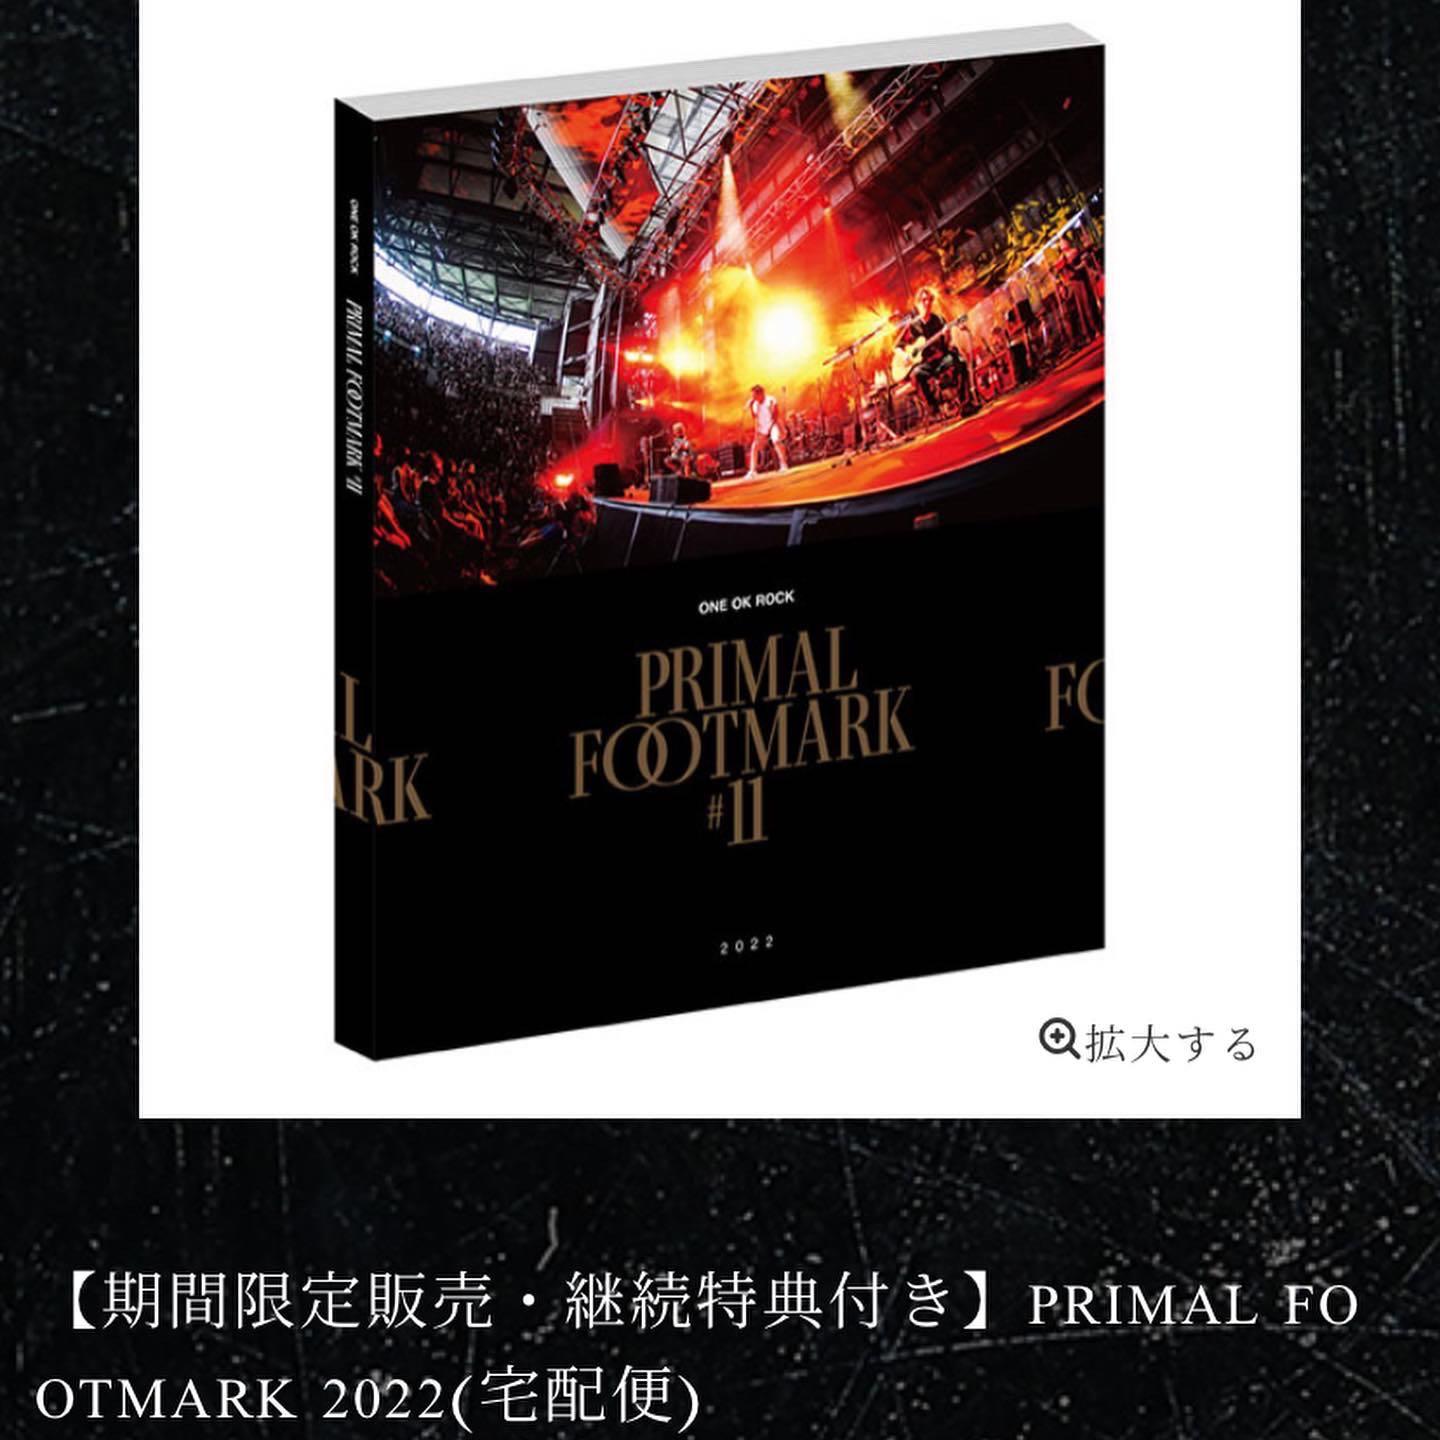 高い素材】 アート・デザイン・音楽 PRIMAL FOOTMARK 2023 ONE OK ROCK 